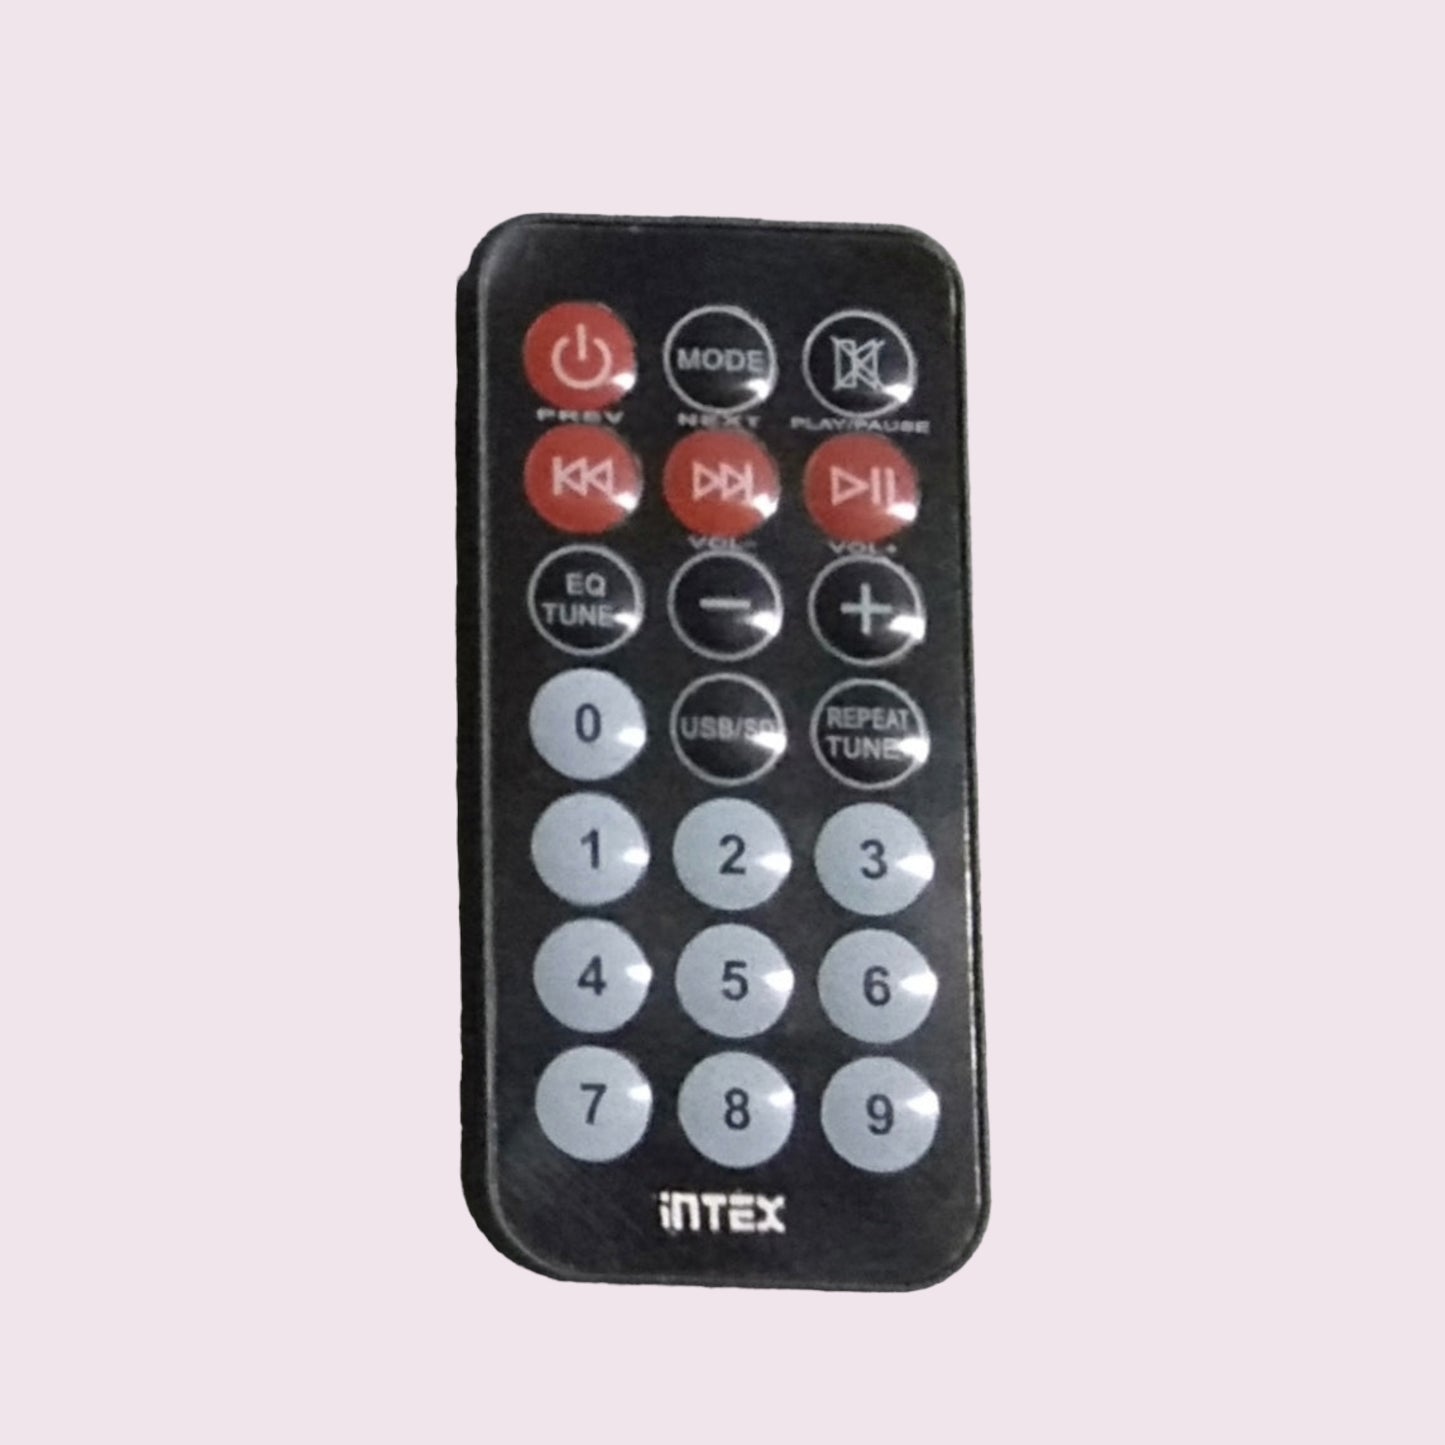 Intex  home theater remote controller (HM27) - Faritha